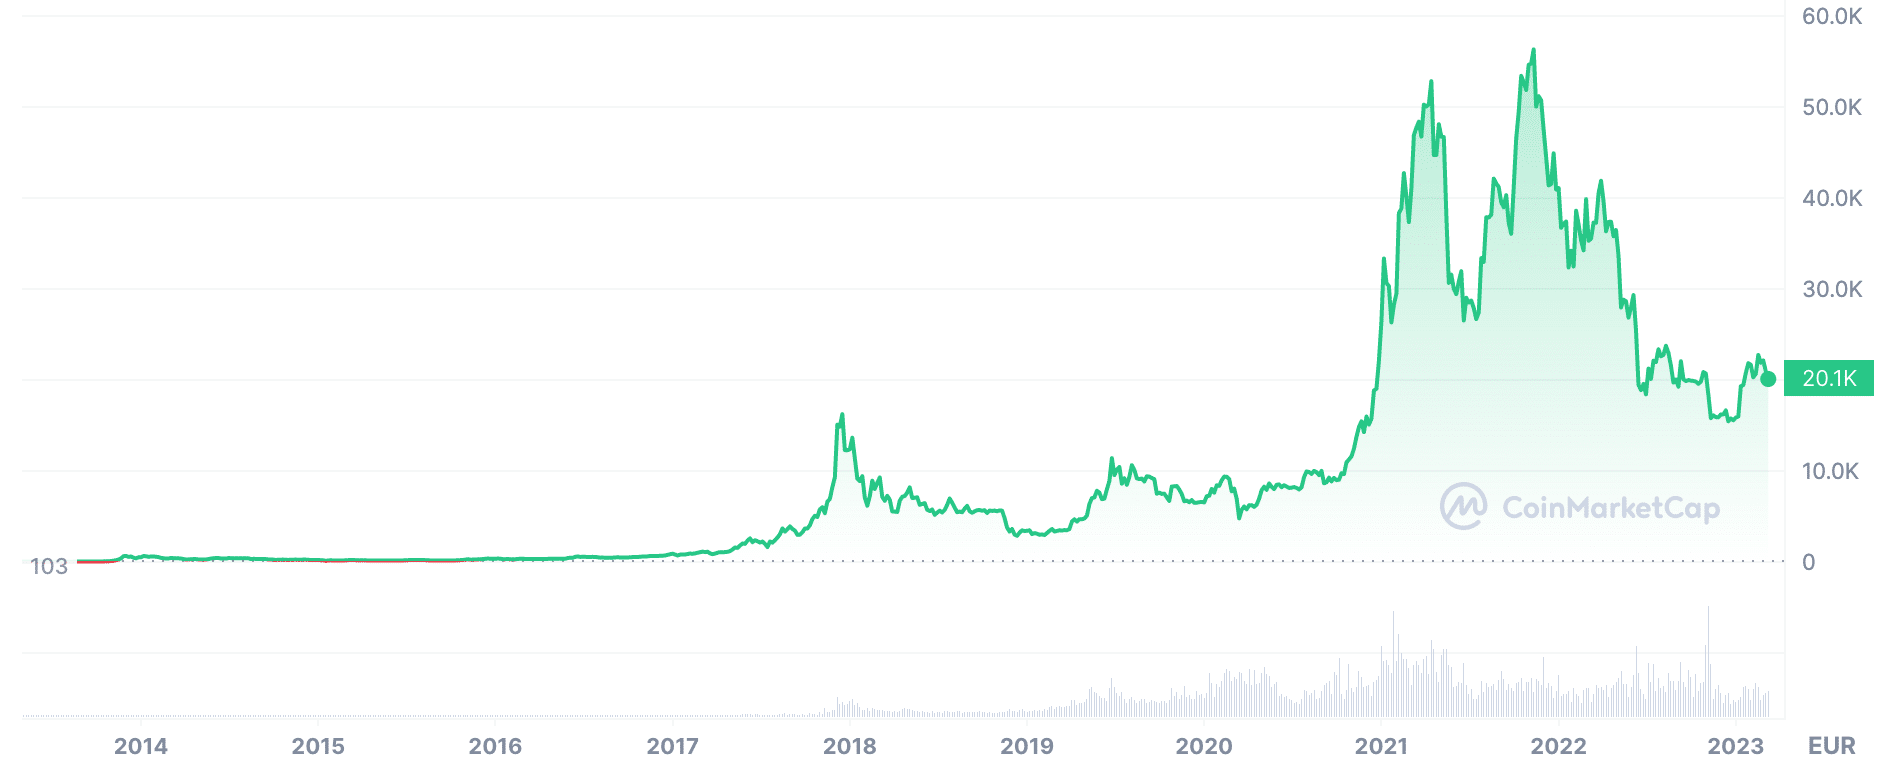 Grafico dell'andamento del Bitcoin